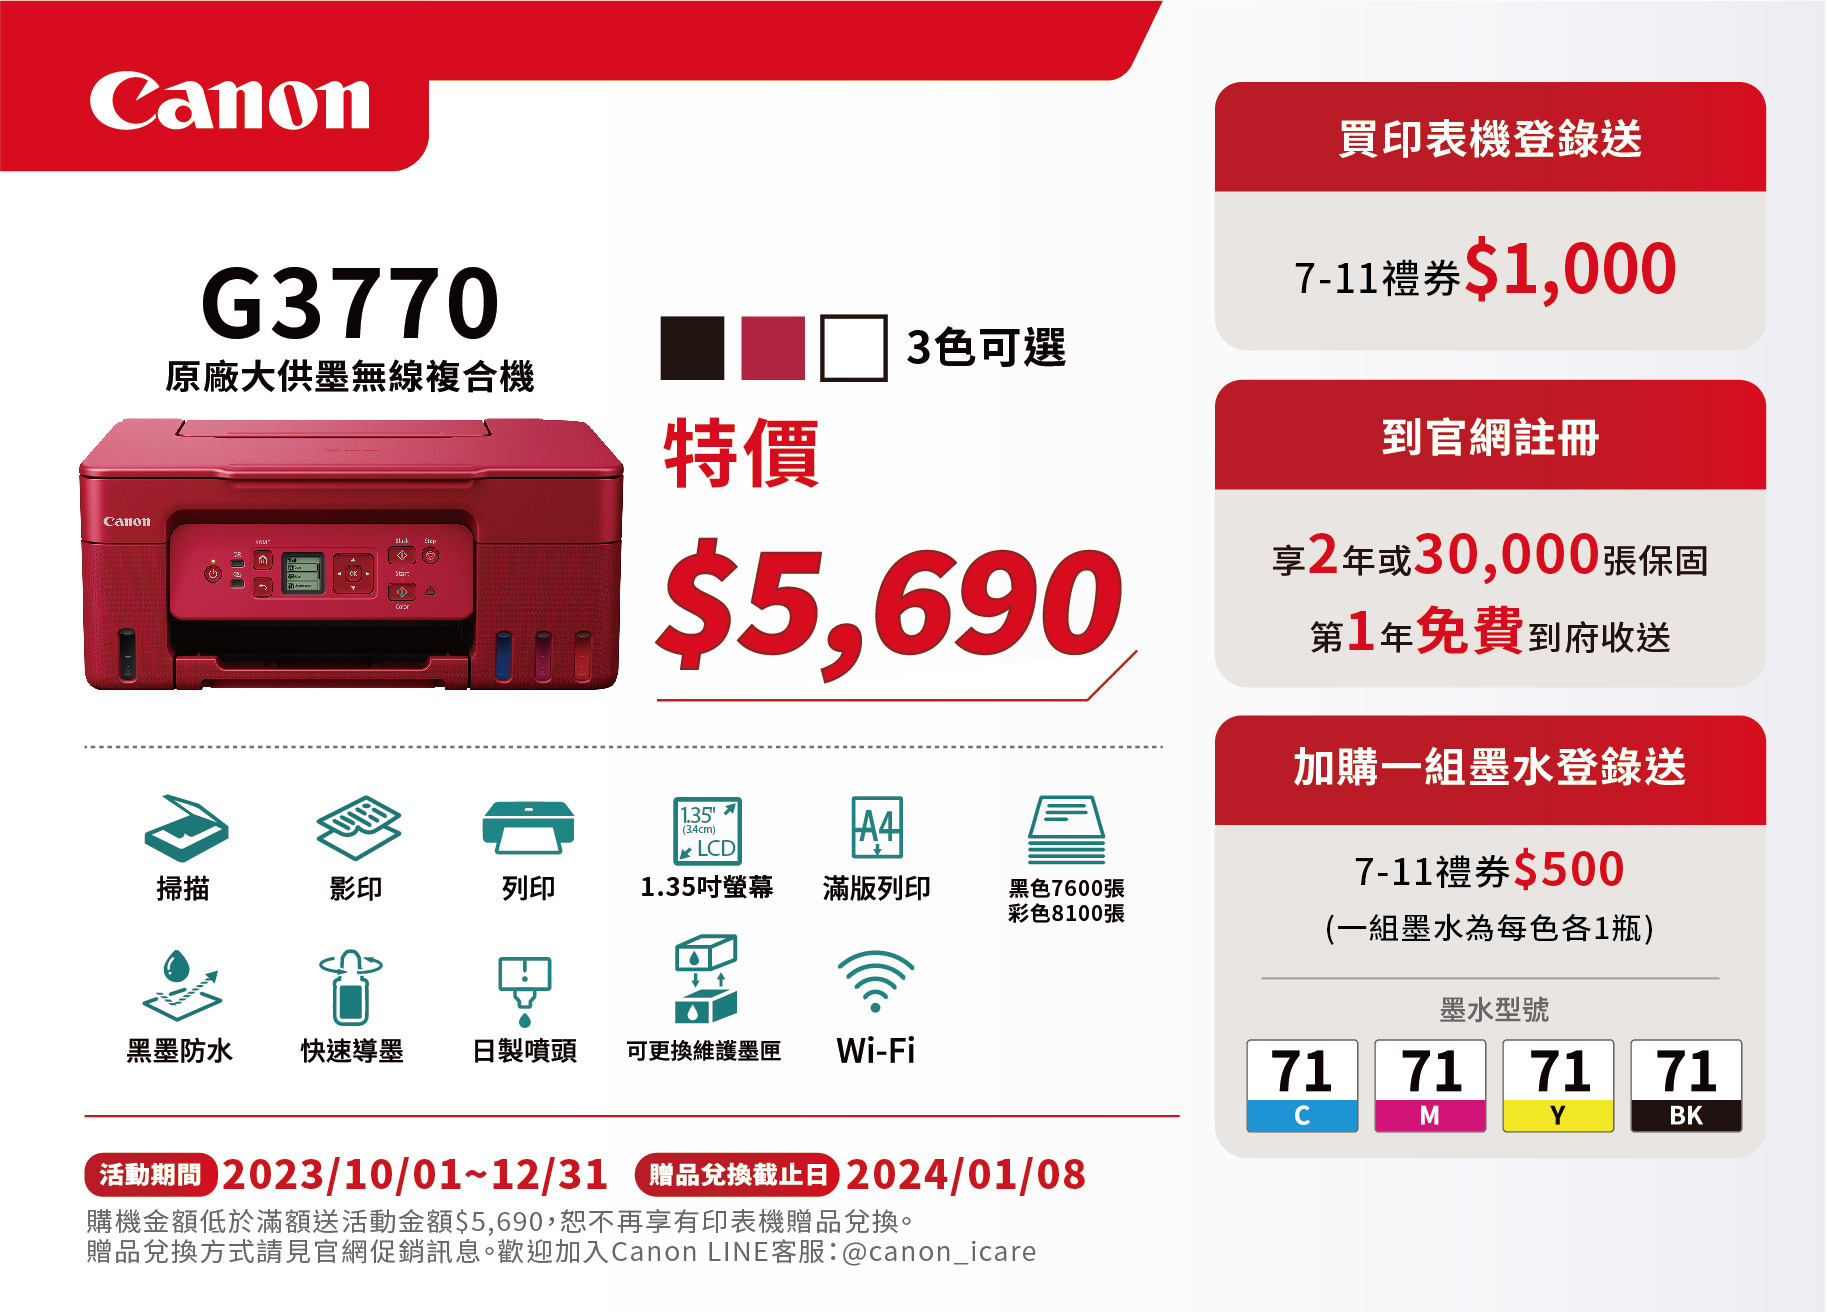 Canon-促銷DM印刷-G3770-01